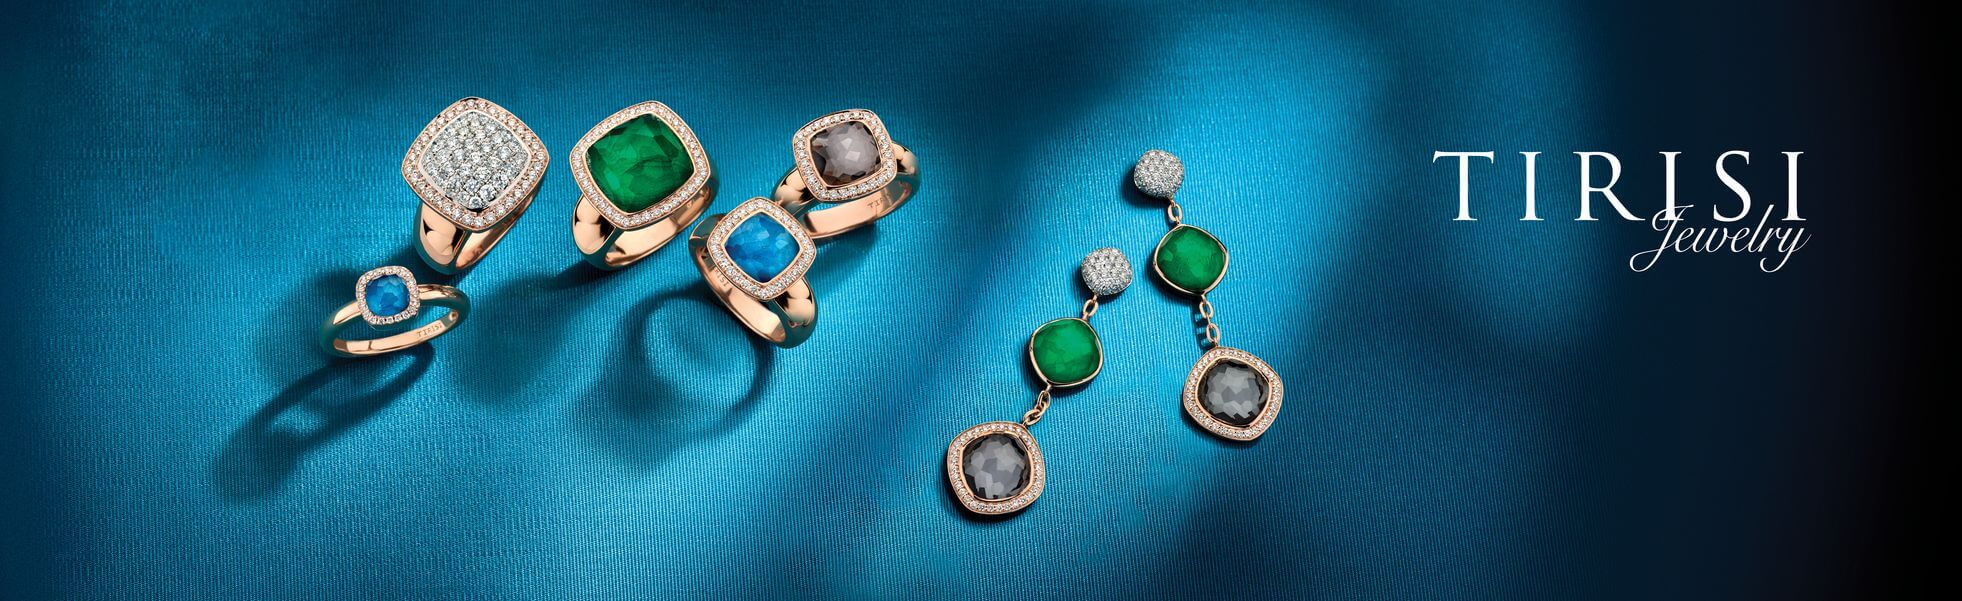 Tirisi Jewelry